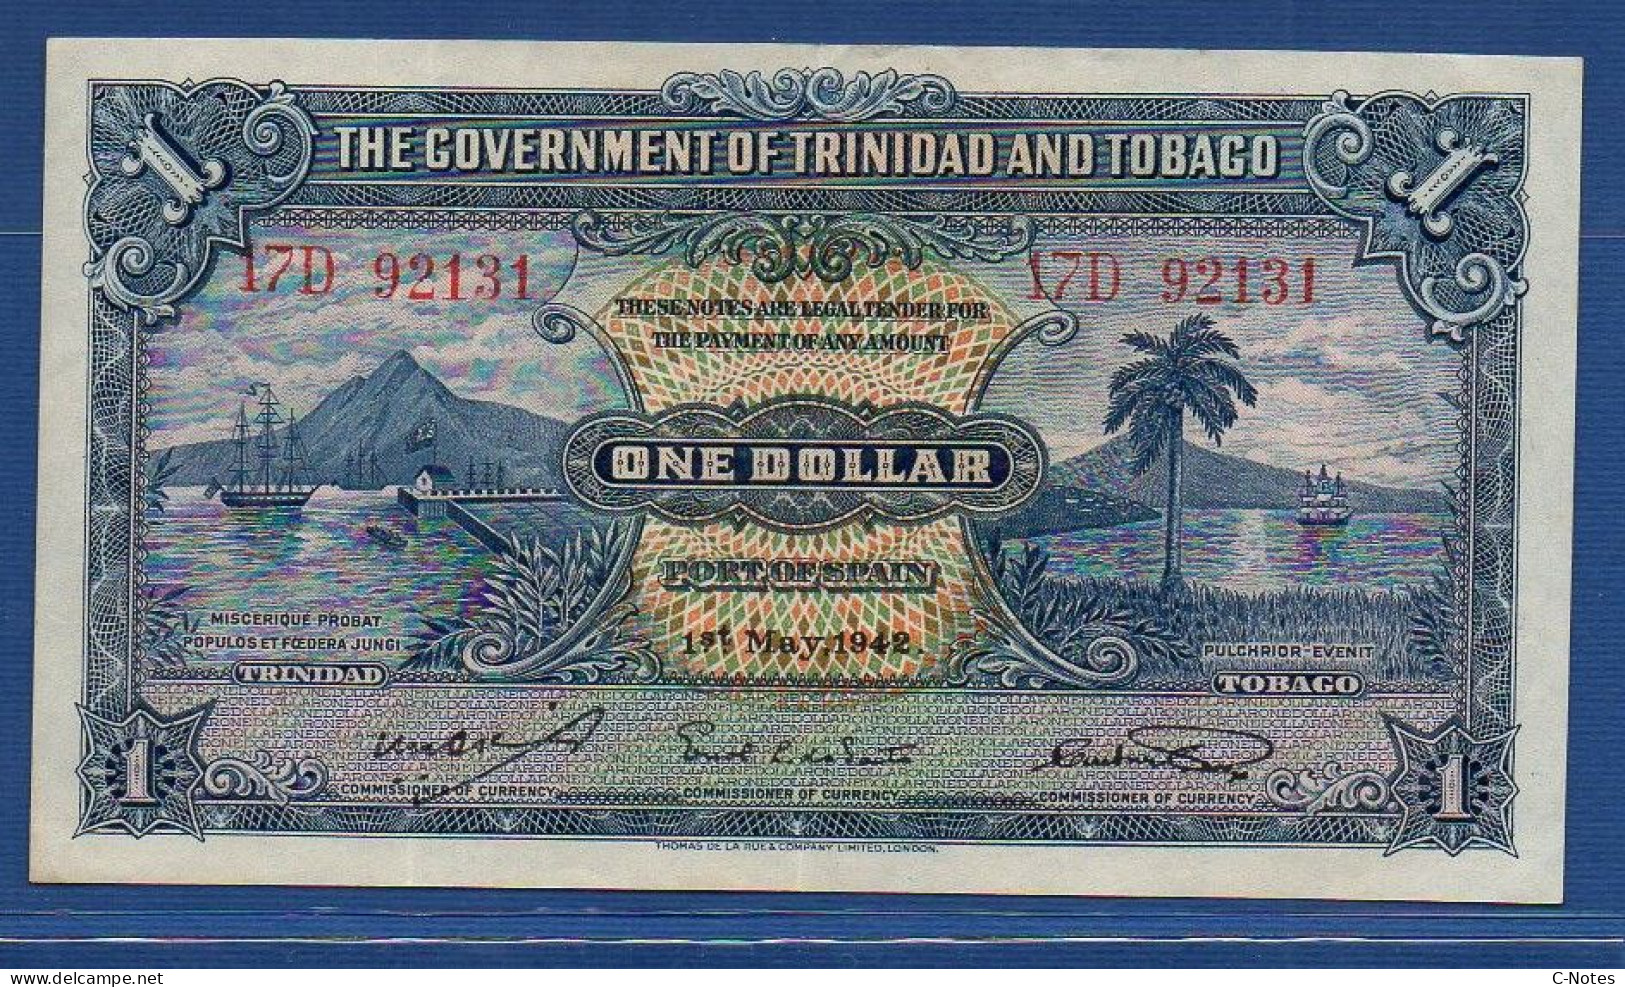 TRINIDAD & TOBAGO - P. 5c – 1 Dollar 01.05.1942 VF/XF, S/n 17D 92131 - Trinidad Y Tobago